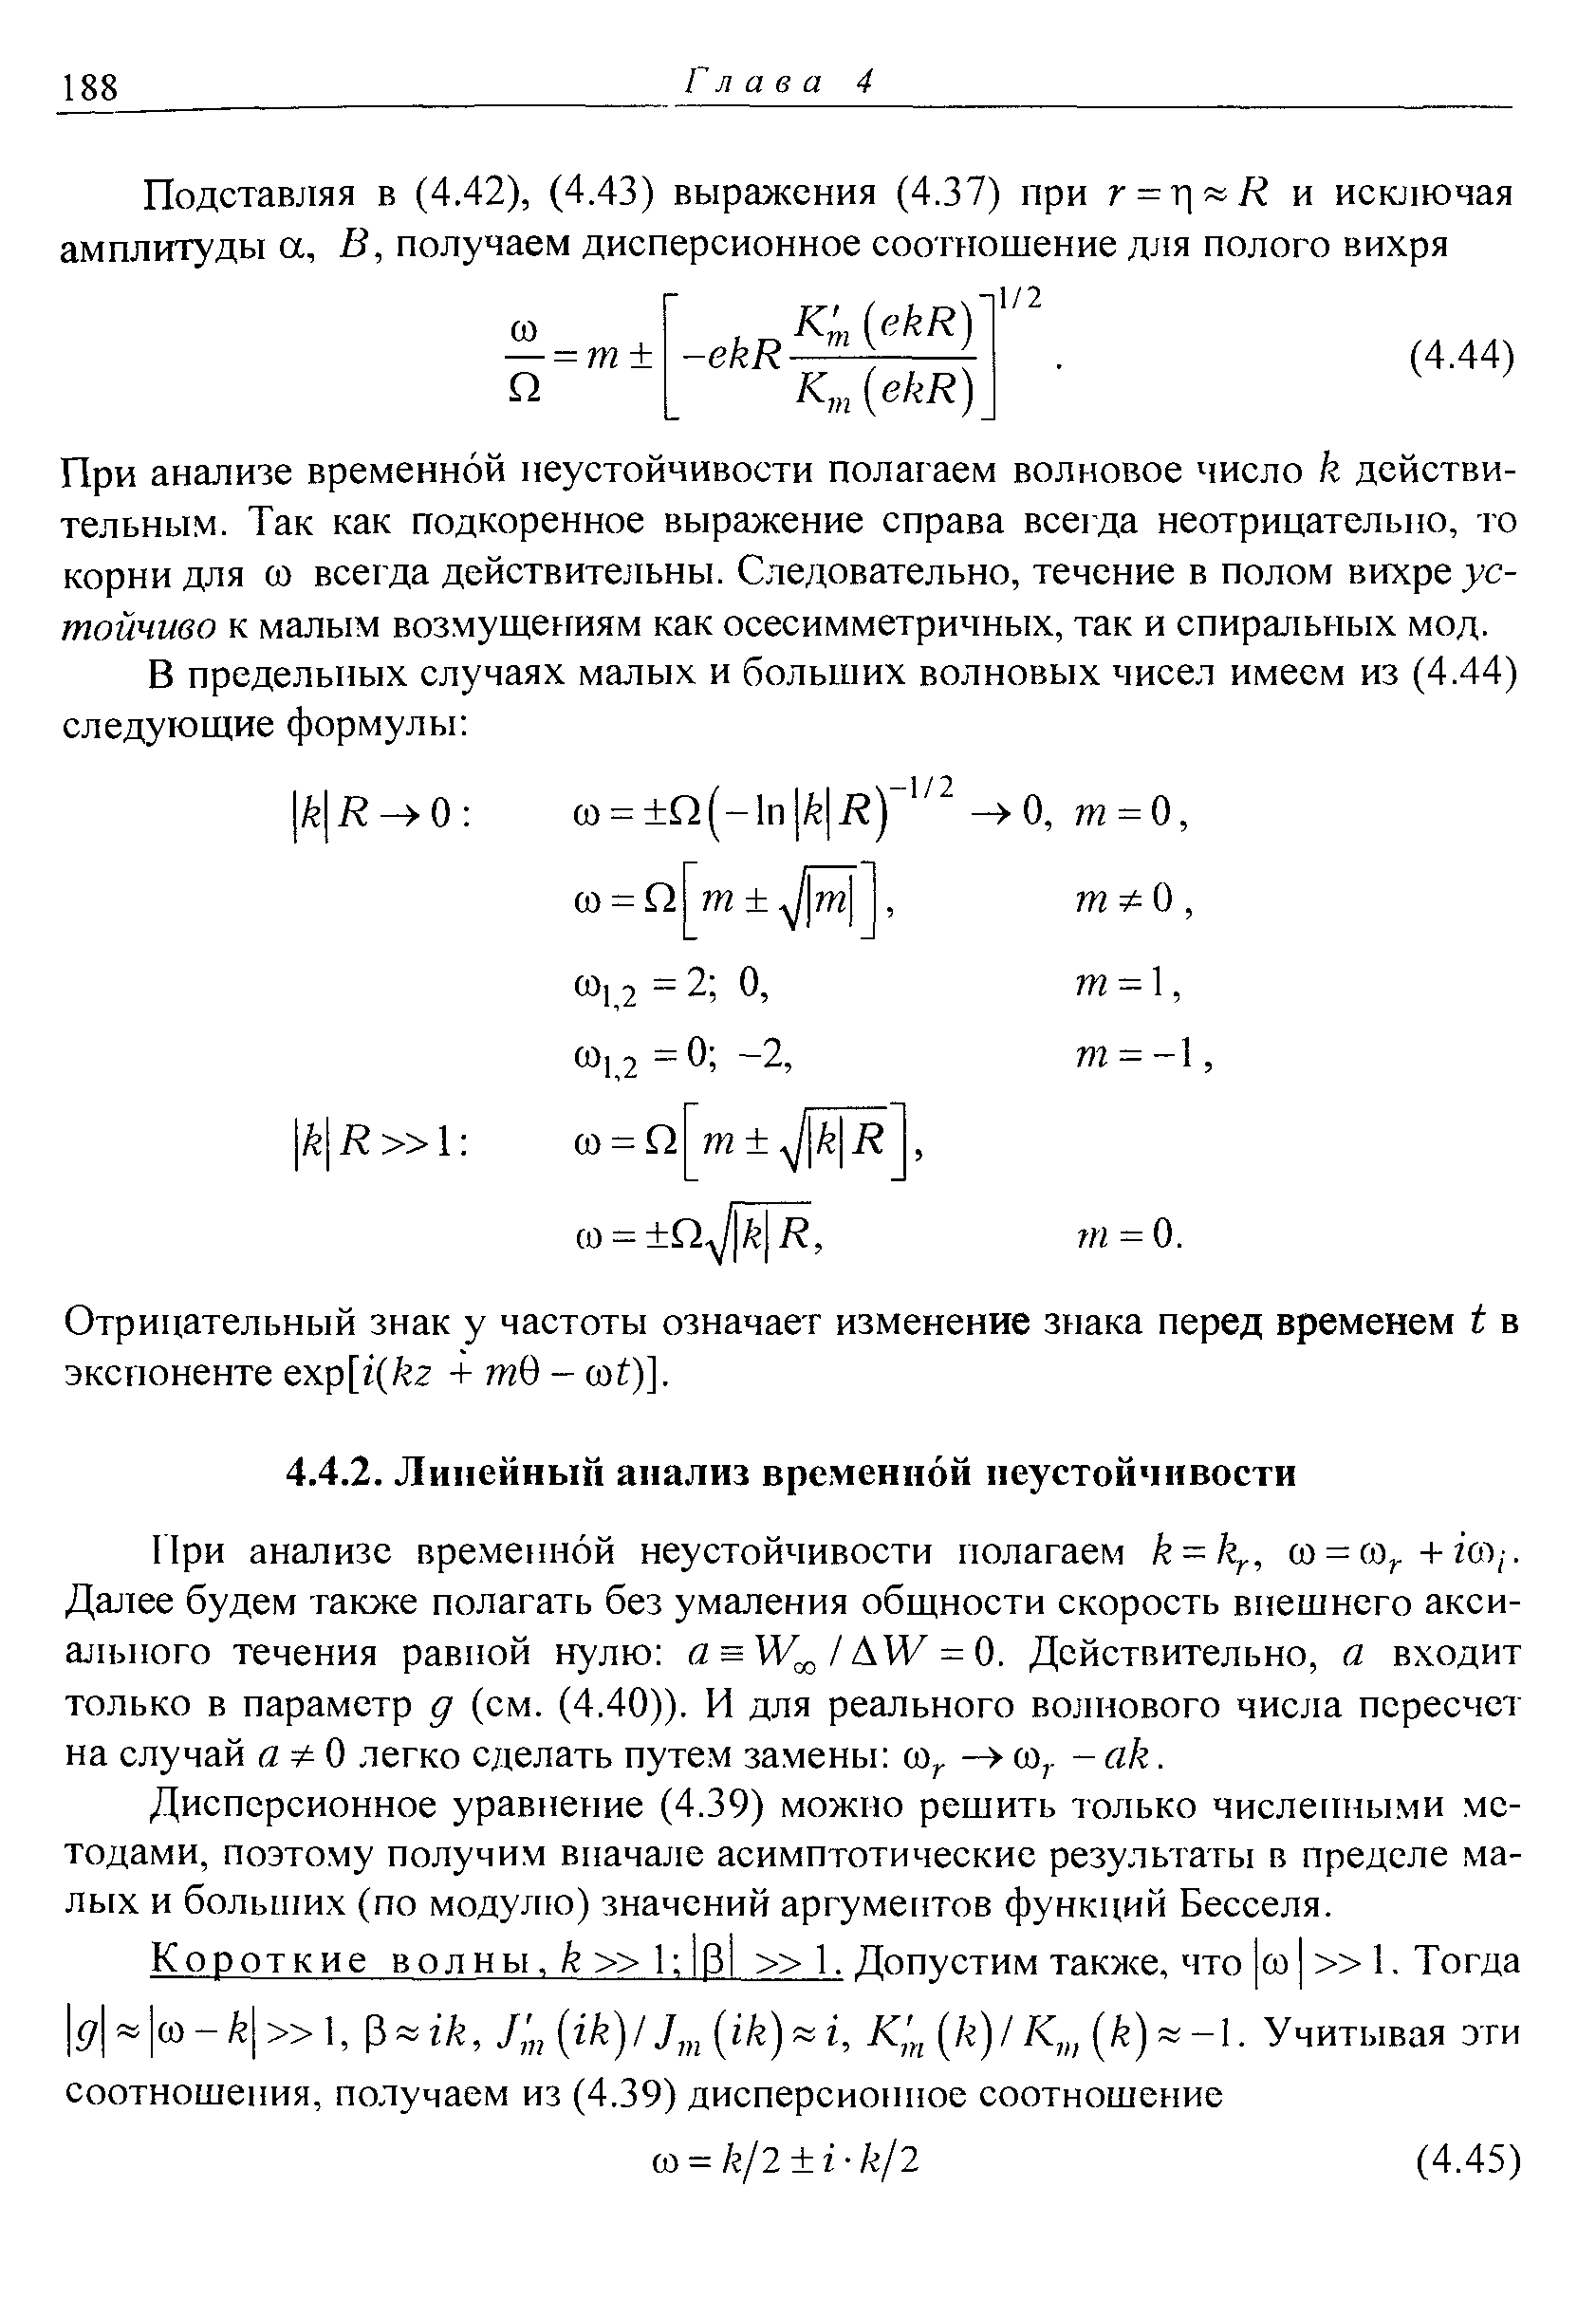 Дисперсионное уравнение (4.39) можно решить только численными методами, поэтому получим вначале асимптотические результаты в пределе малых и болыних (по модулю) значений аргументов функций Бесселя.
